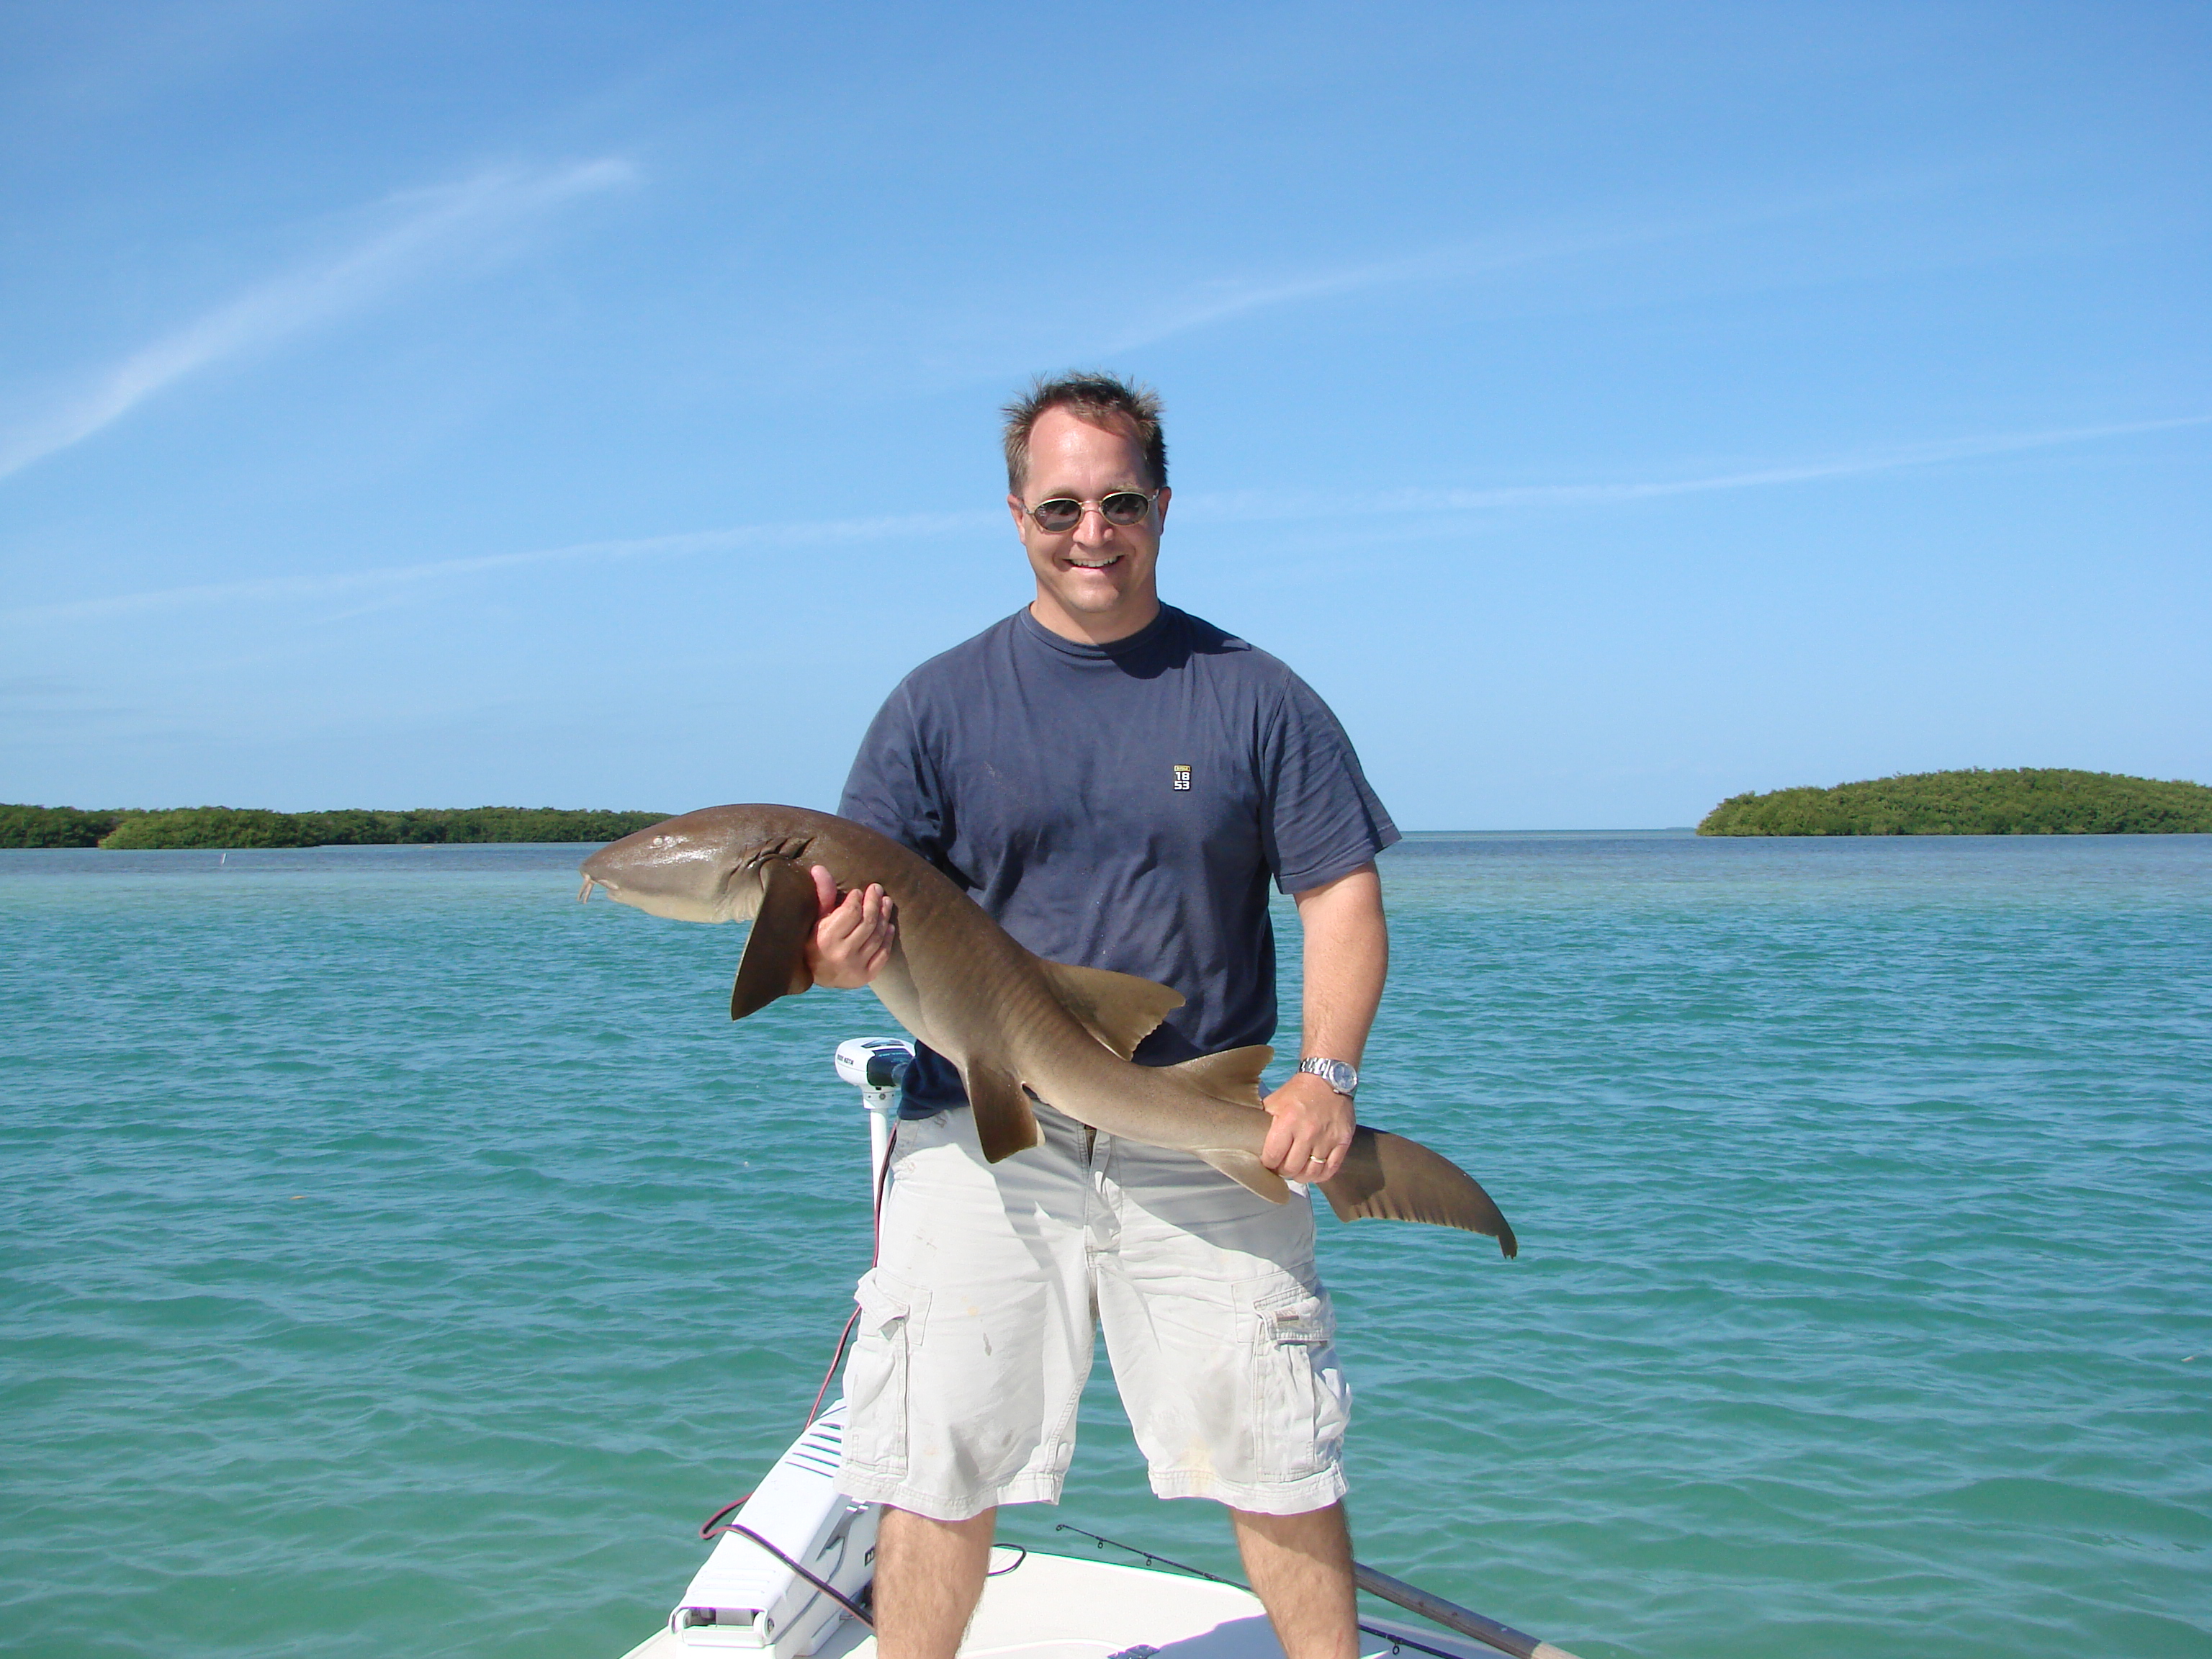 Florida Keys Fishing